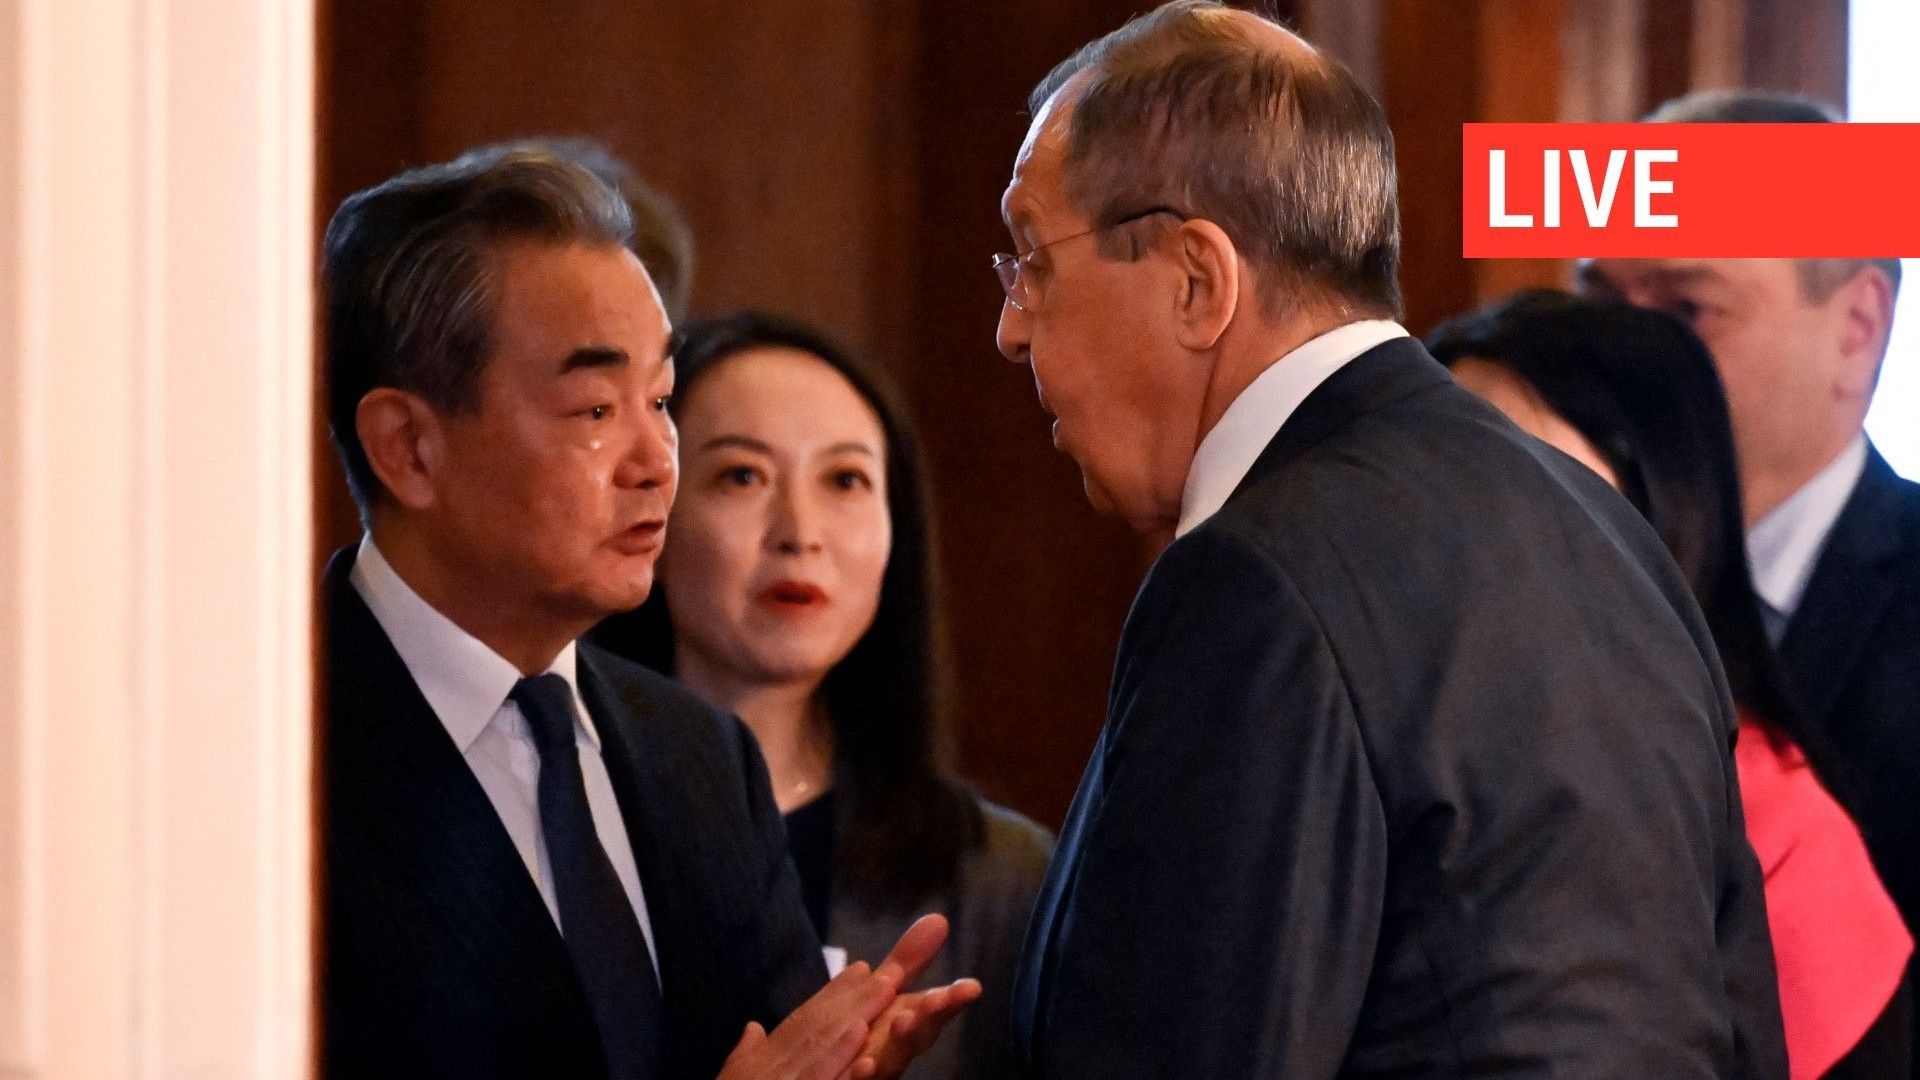 Le ministre russe des Affaires étrangères Sergueï Lavrov et le directeur du bureau de la Commission centrale des affaires étrangères de la Chine Wang Yi entrent dans une salle lors d'une réunion à Moscou, le 22 février 2023.  